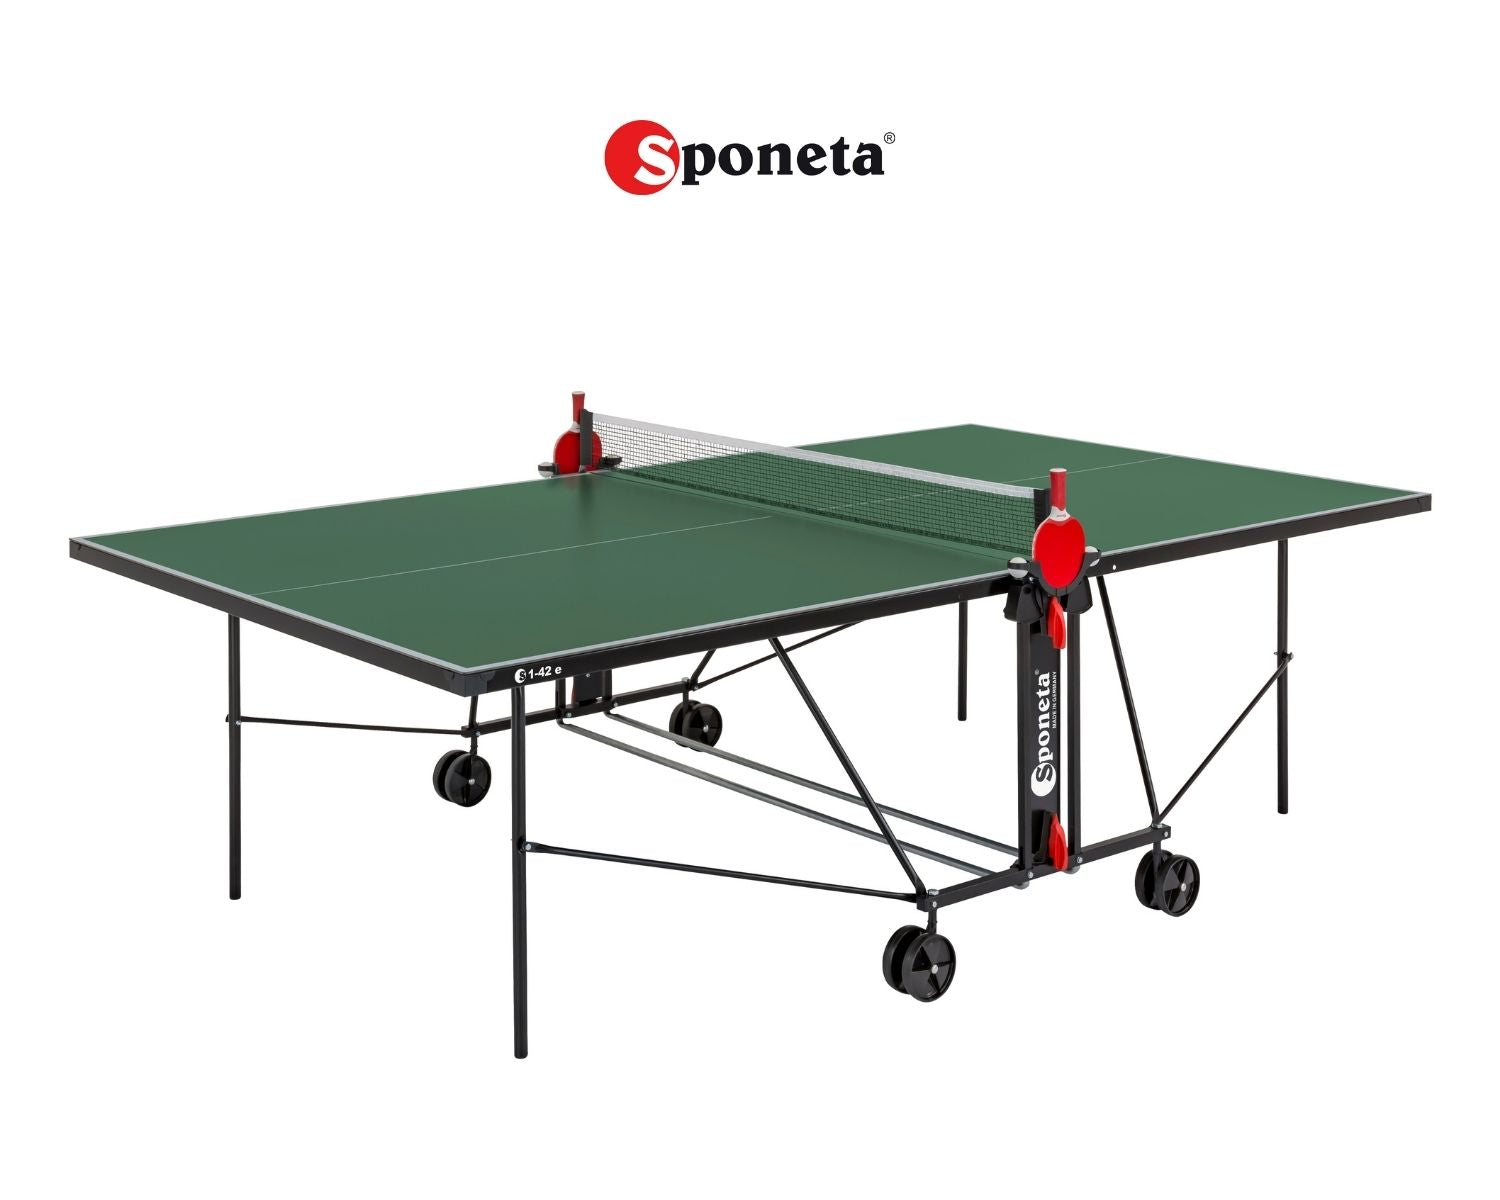 Sponeta Outdoor Tischtennistisch S 1-42 e